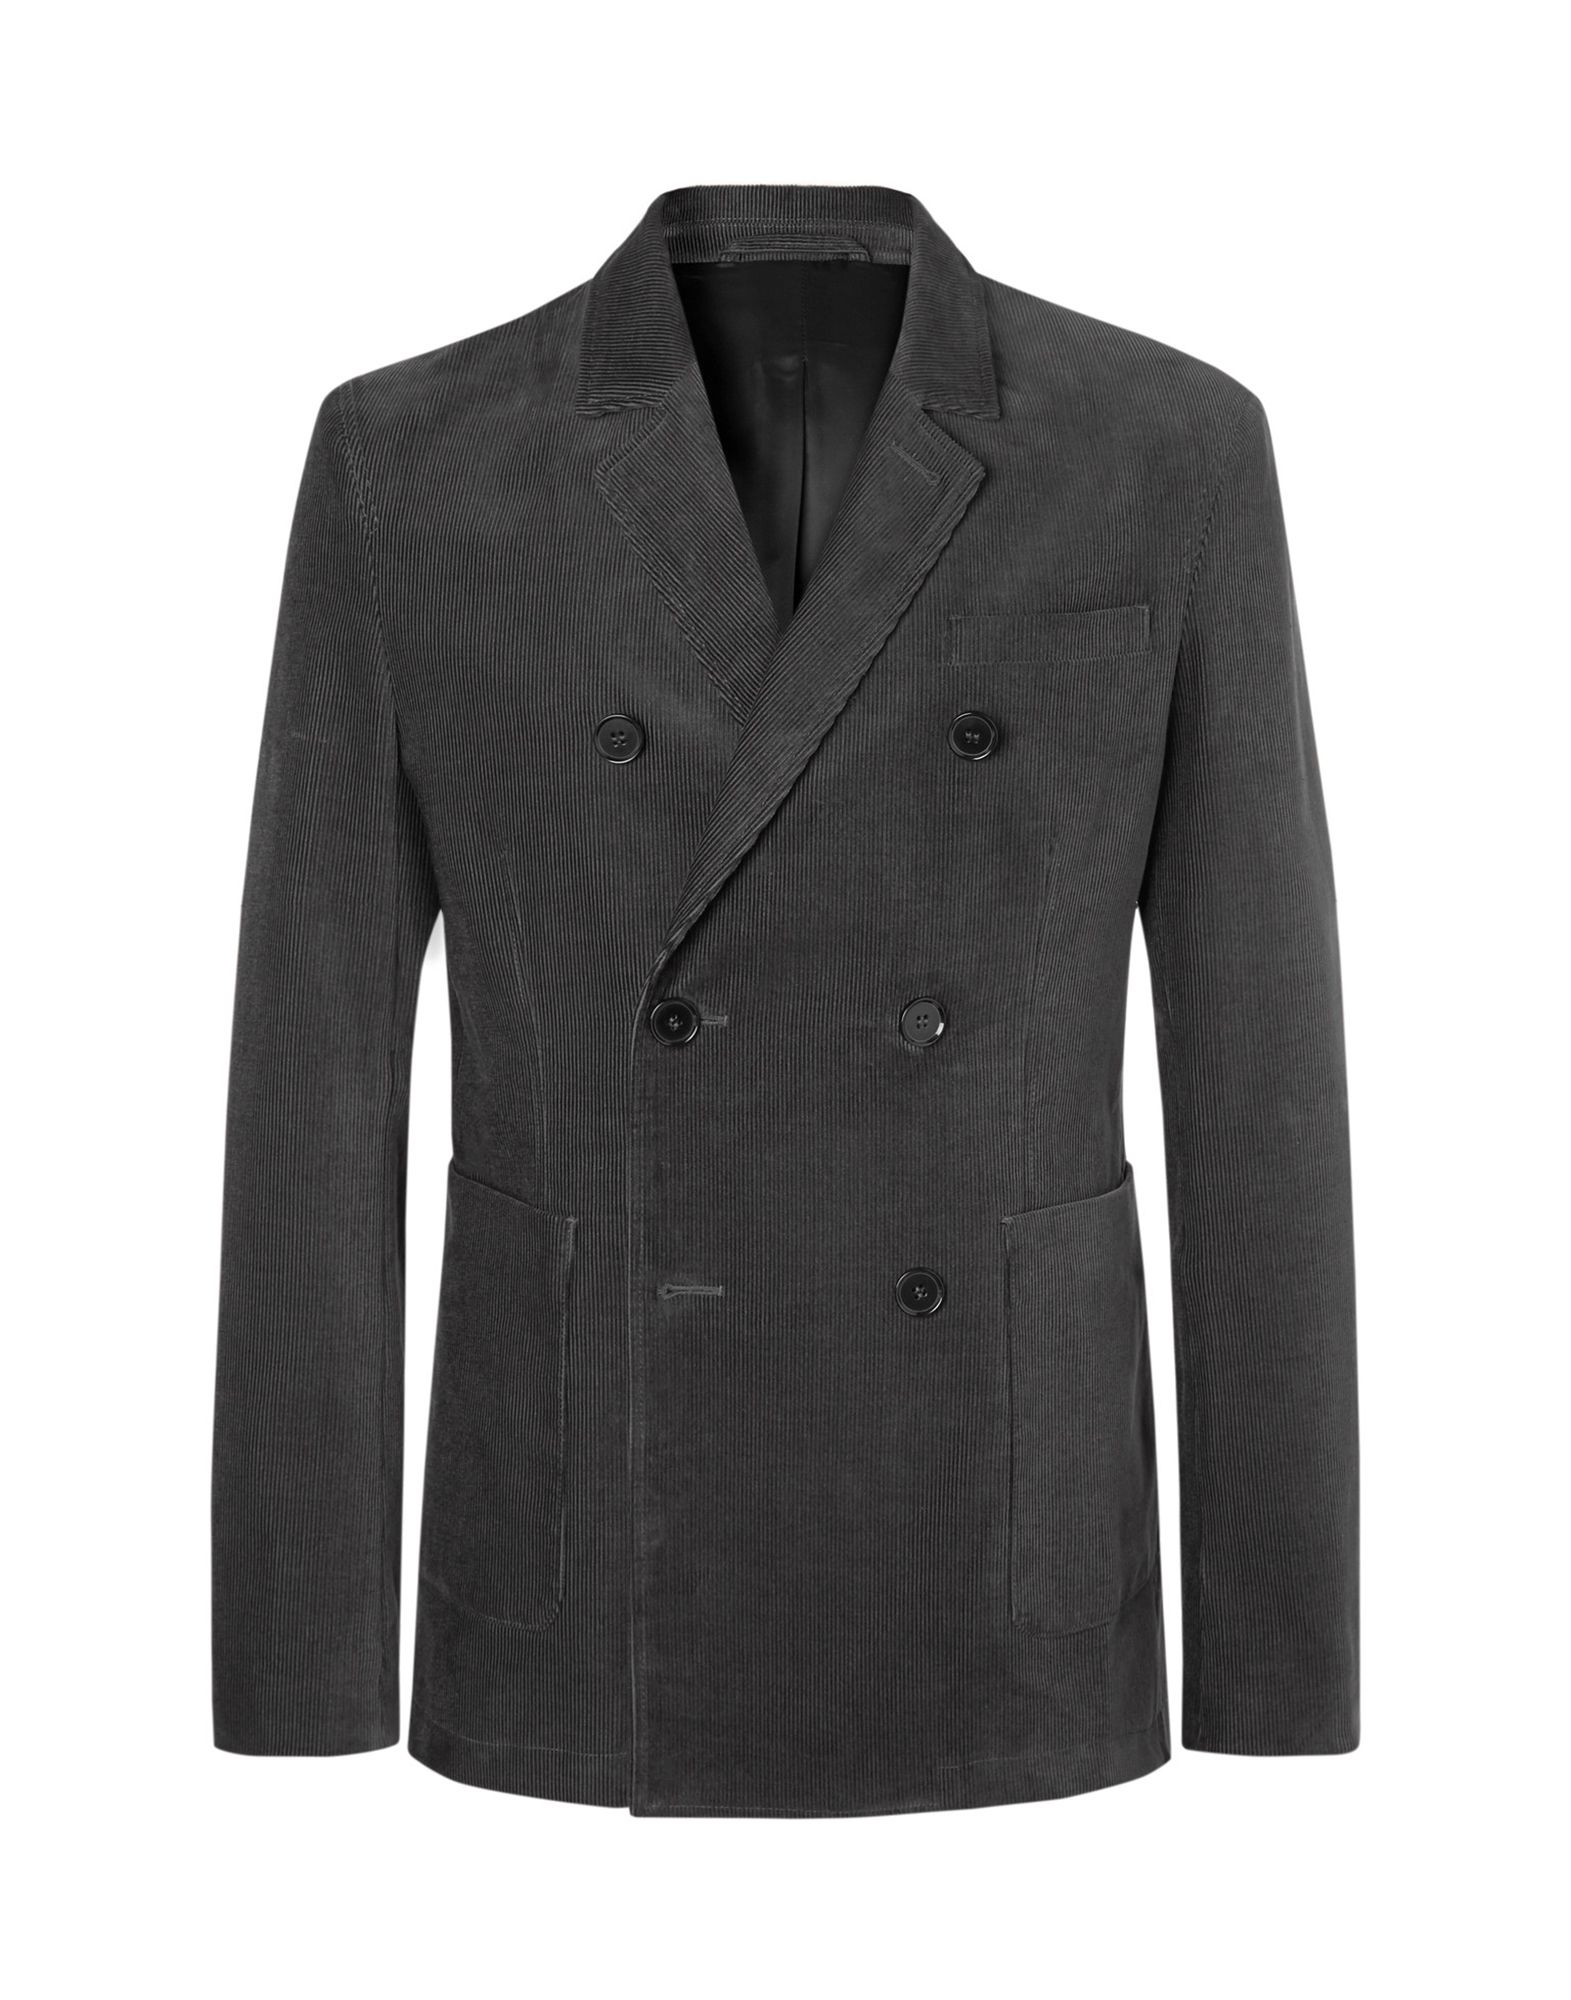 MR P. Suit jackets